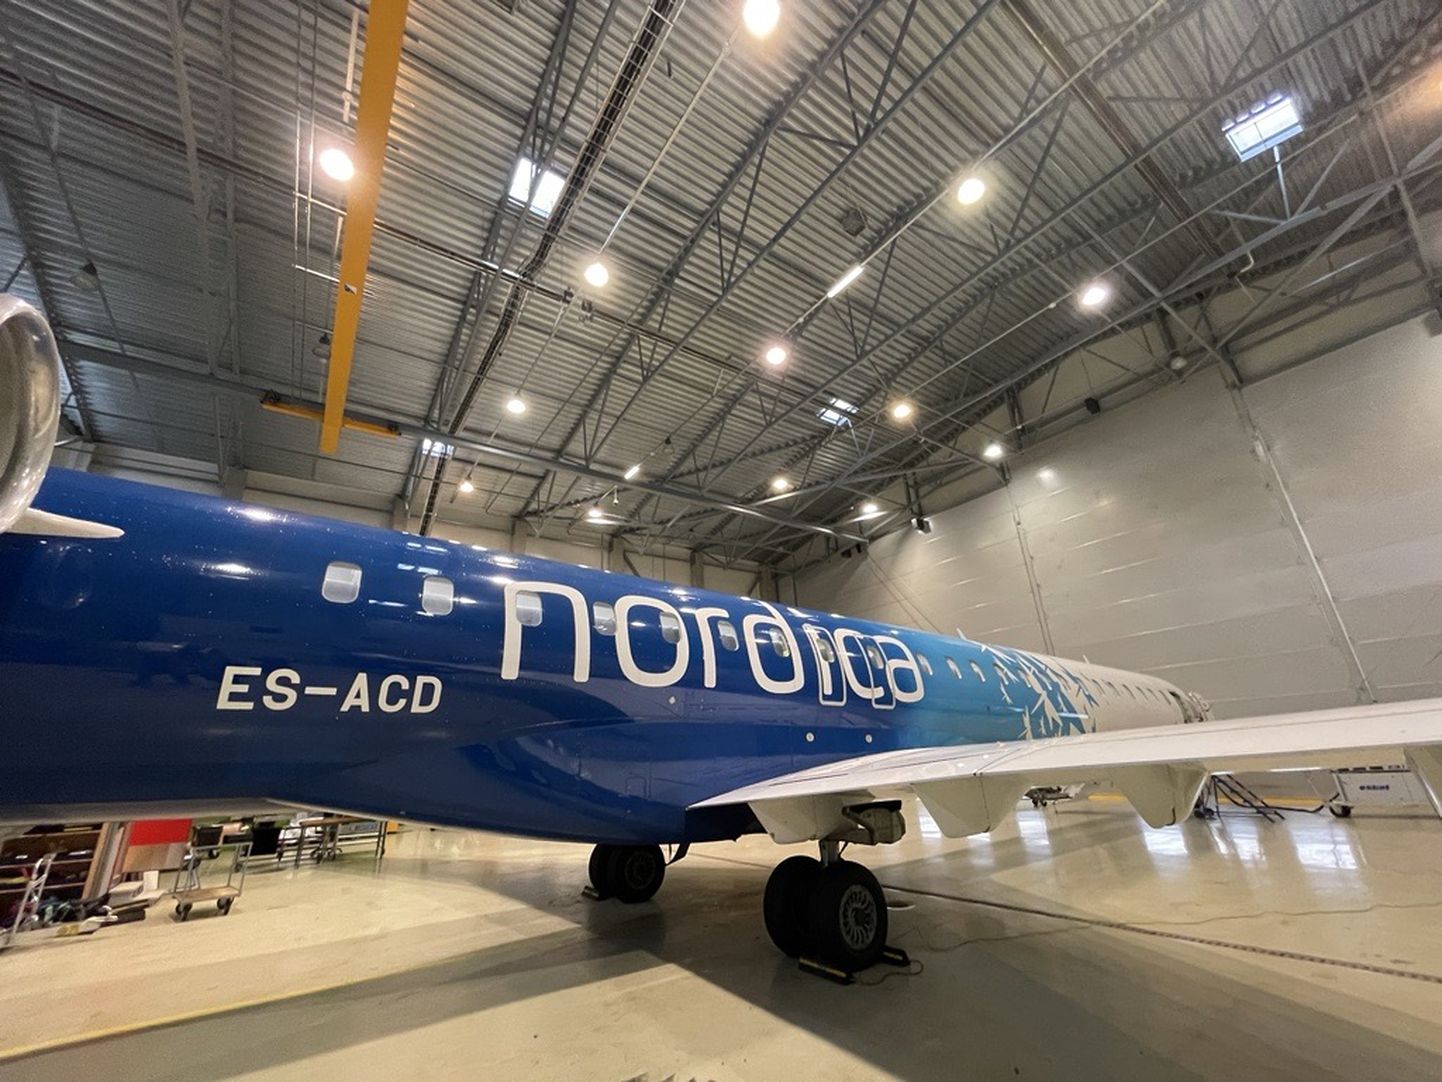 Nordica lennukid ei lenda tänapäeval Eesti vahet, käies siin vaid hoolduses. FOTO: Nordic Aviation Group